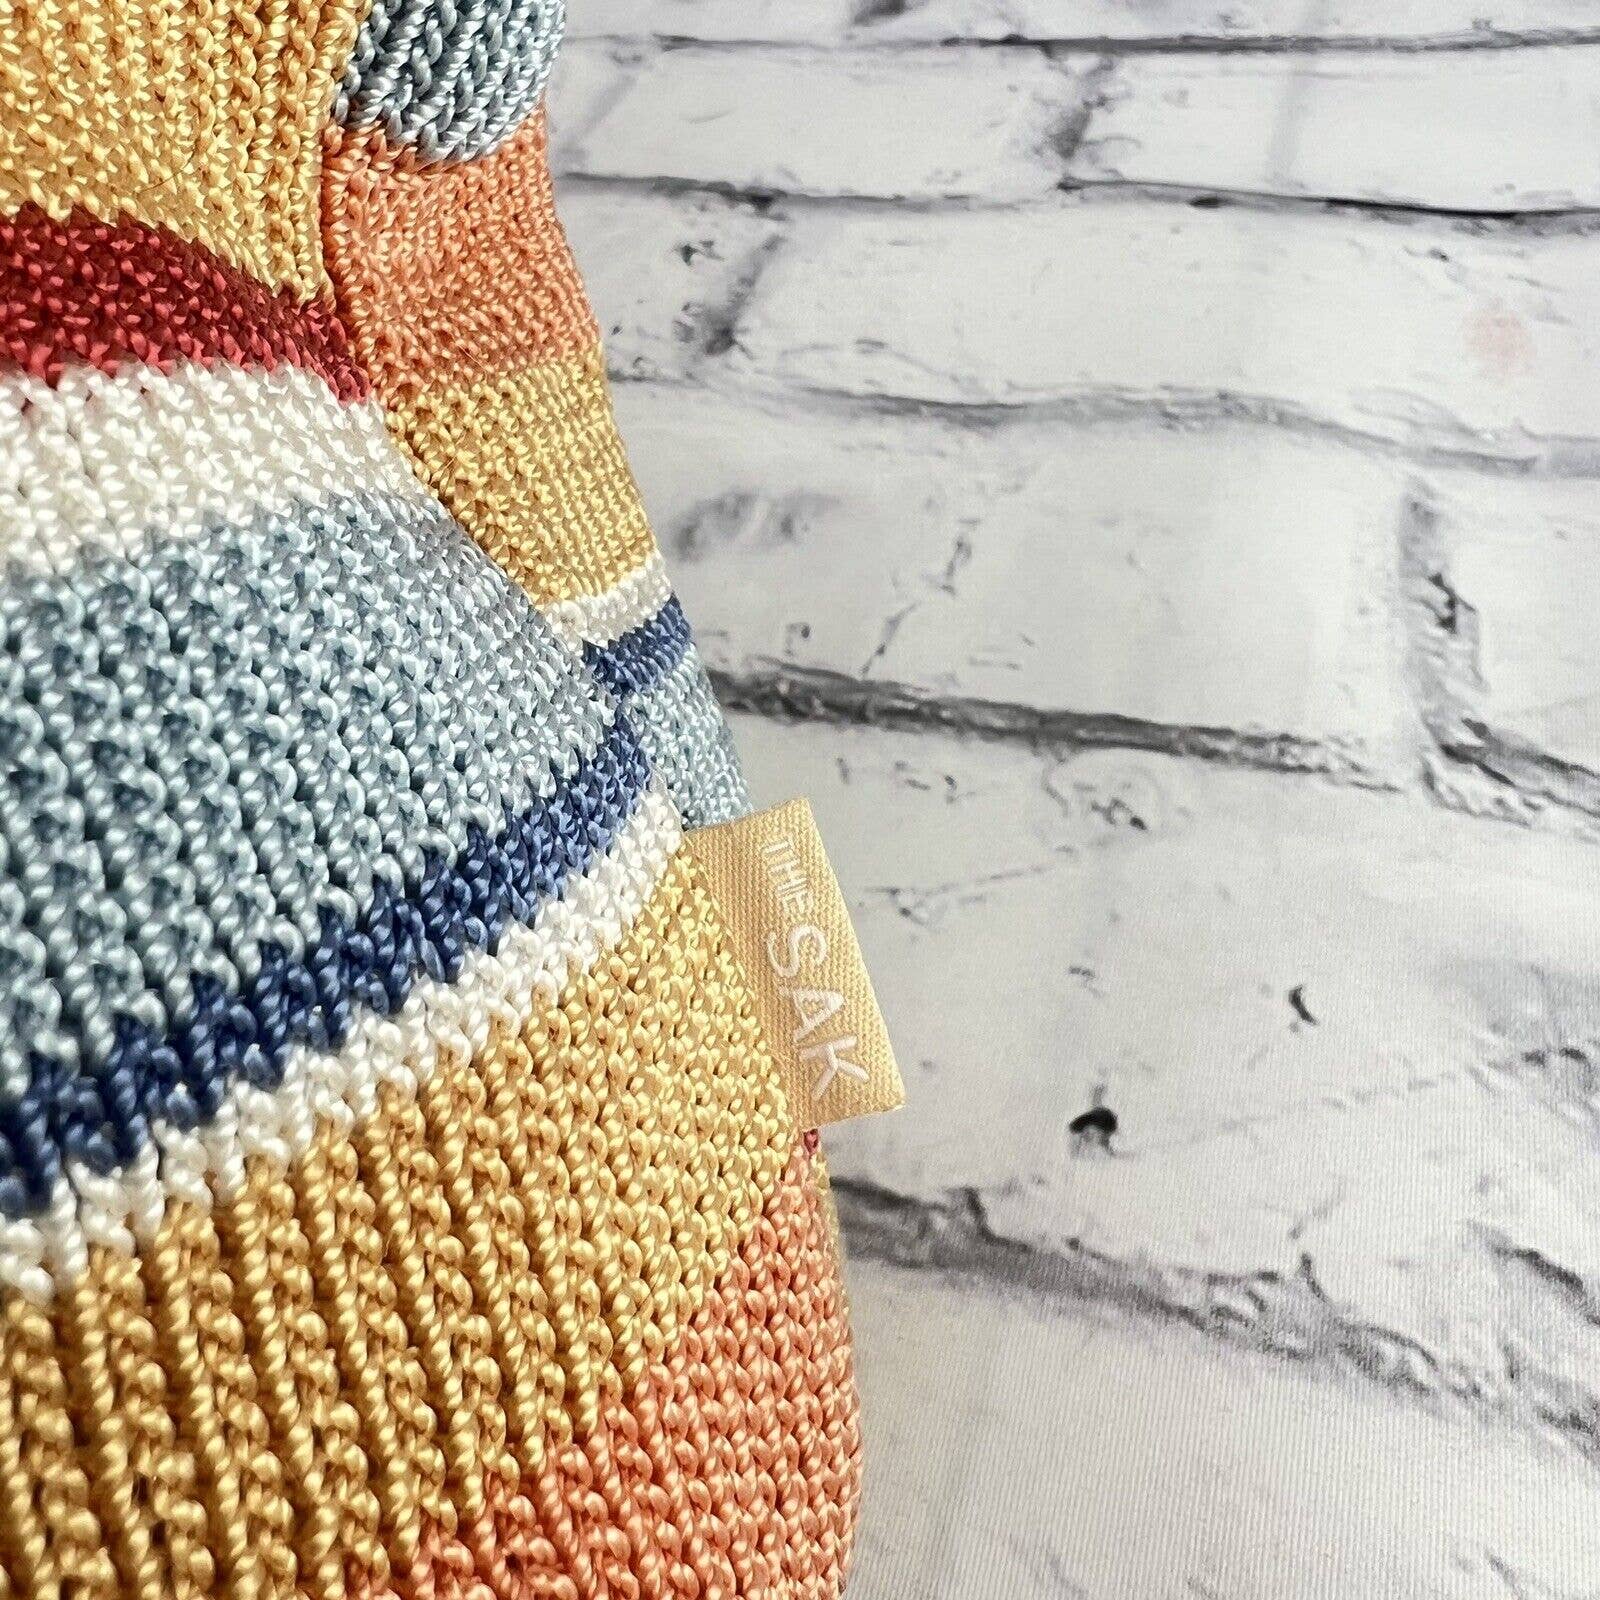 THE SAK Shoulder Bag Multi Color Striped Crochet Knit Bag Purse Tote